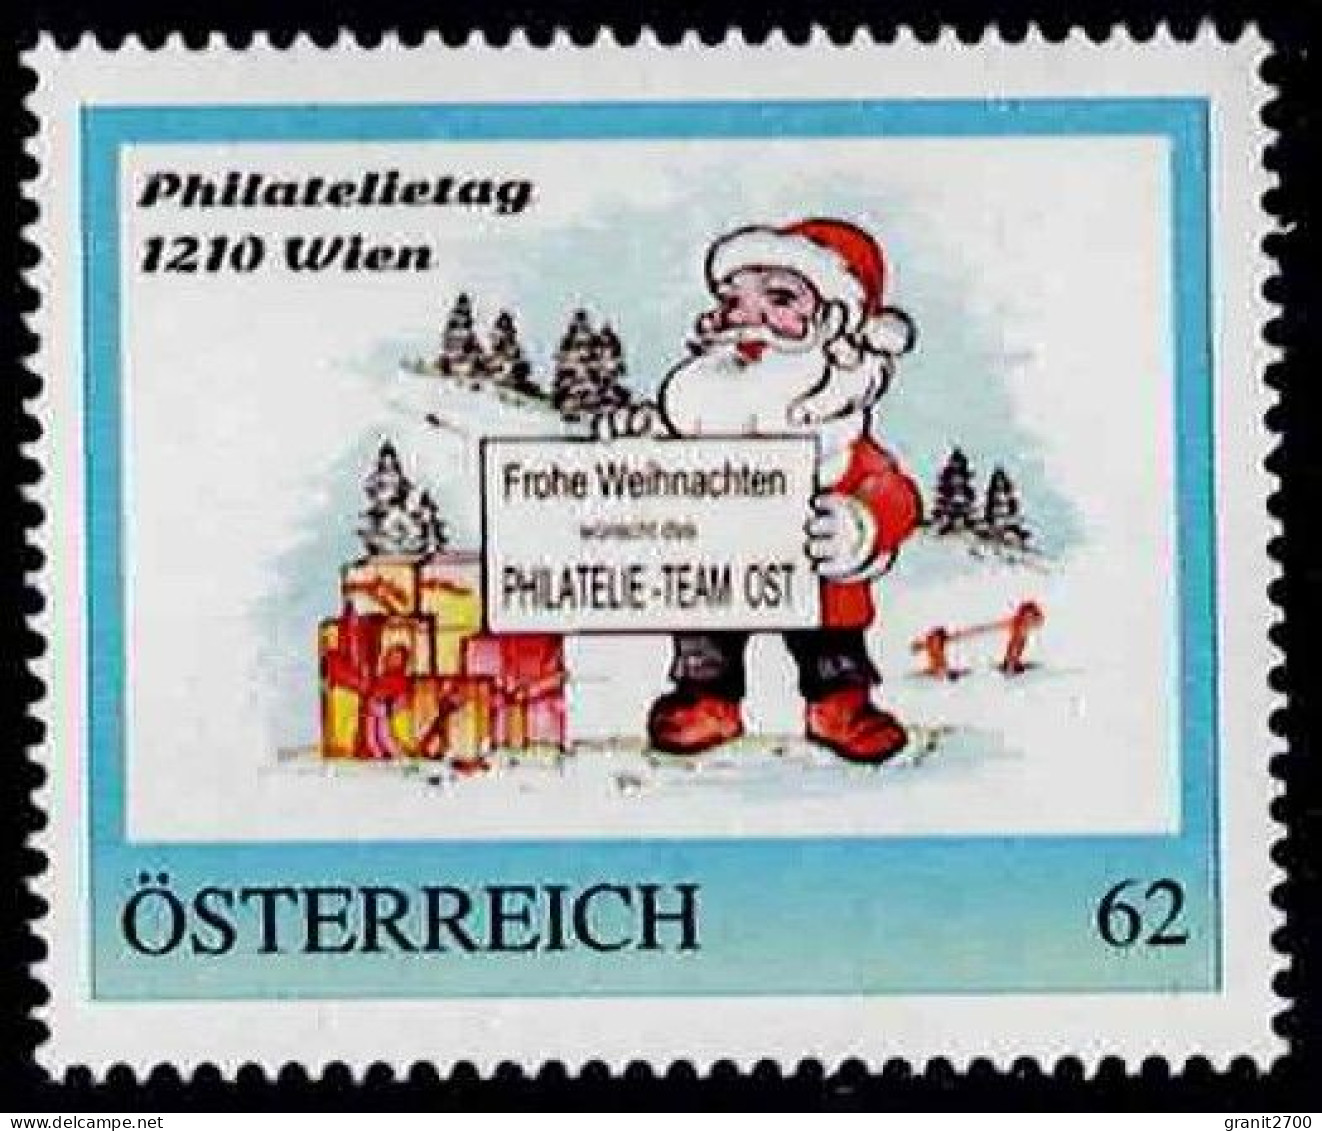 PM Philatelietag 1210 Wien - Frohe Weihnacht  Ex Bogen Nr. 8112488  Vom 18.12.2014  Postfrisch - Francobolli Personalizzati